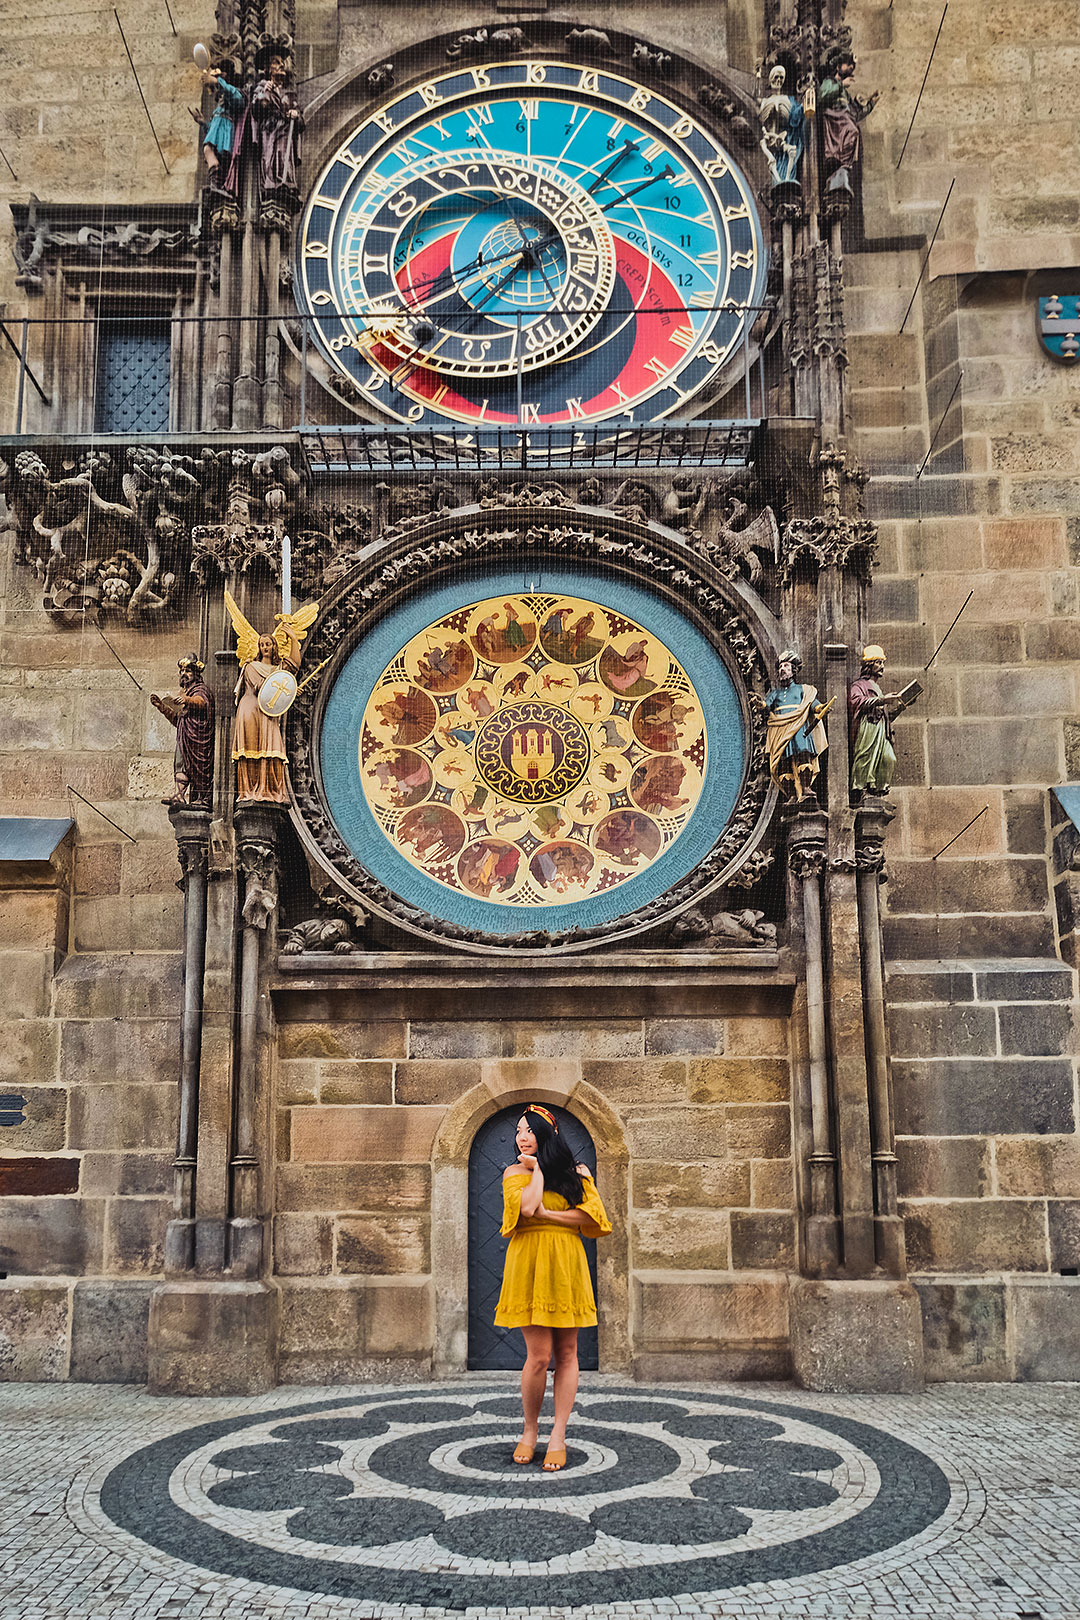 Astronomical Clock of Prague